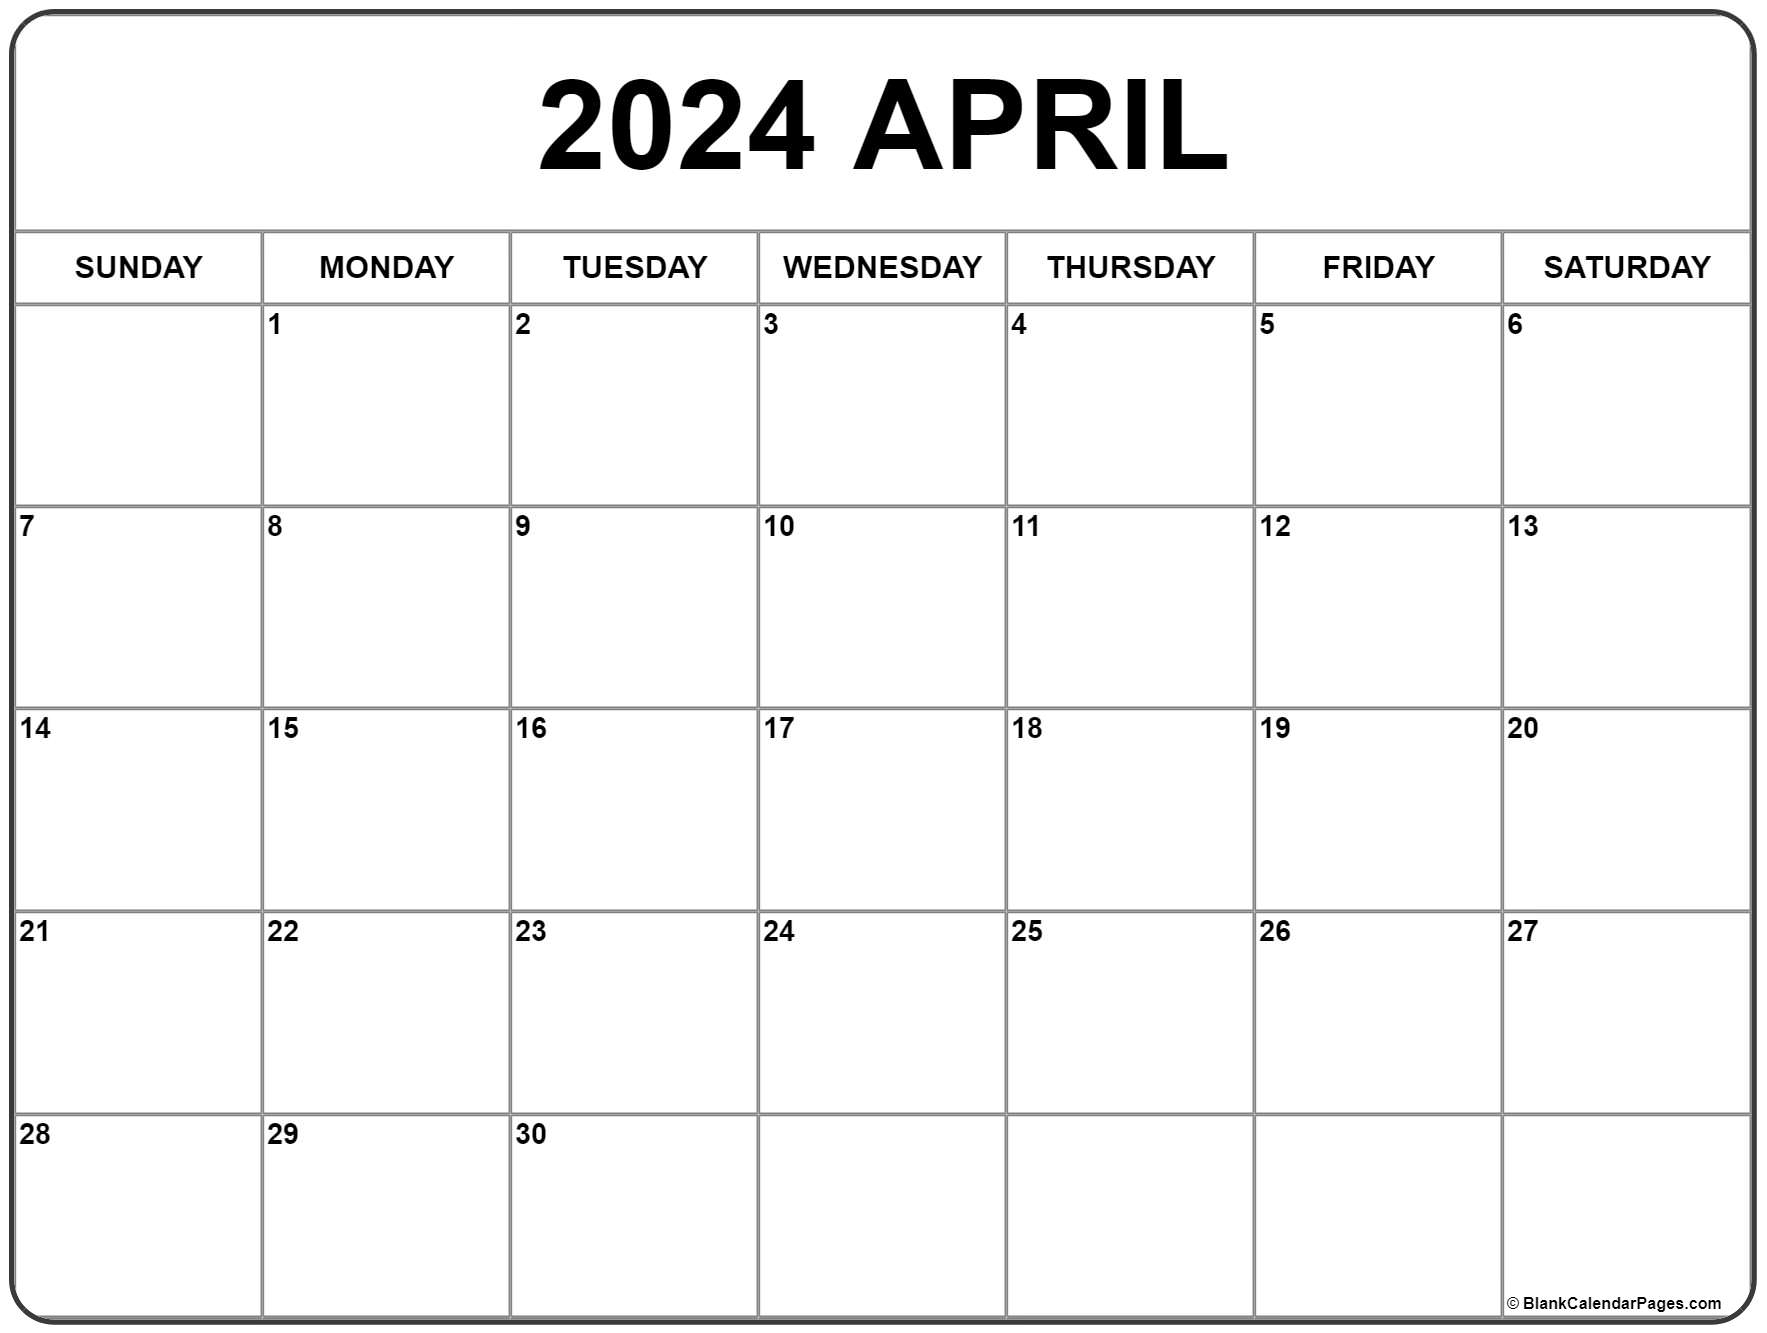 April 2024 Calendar | Free Printable Calendar for Free April Calendar 2024 Printable